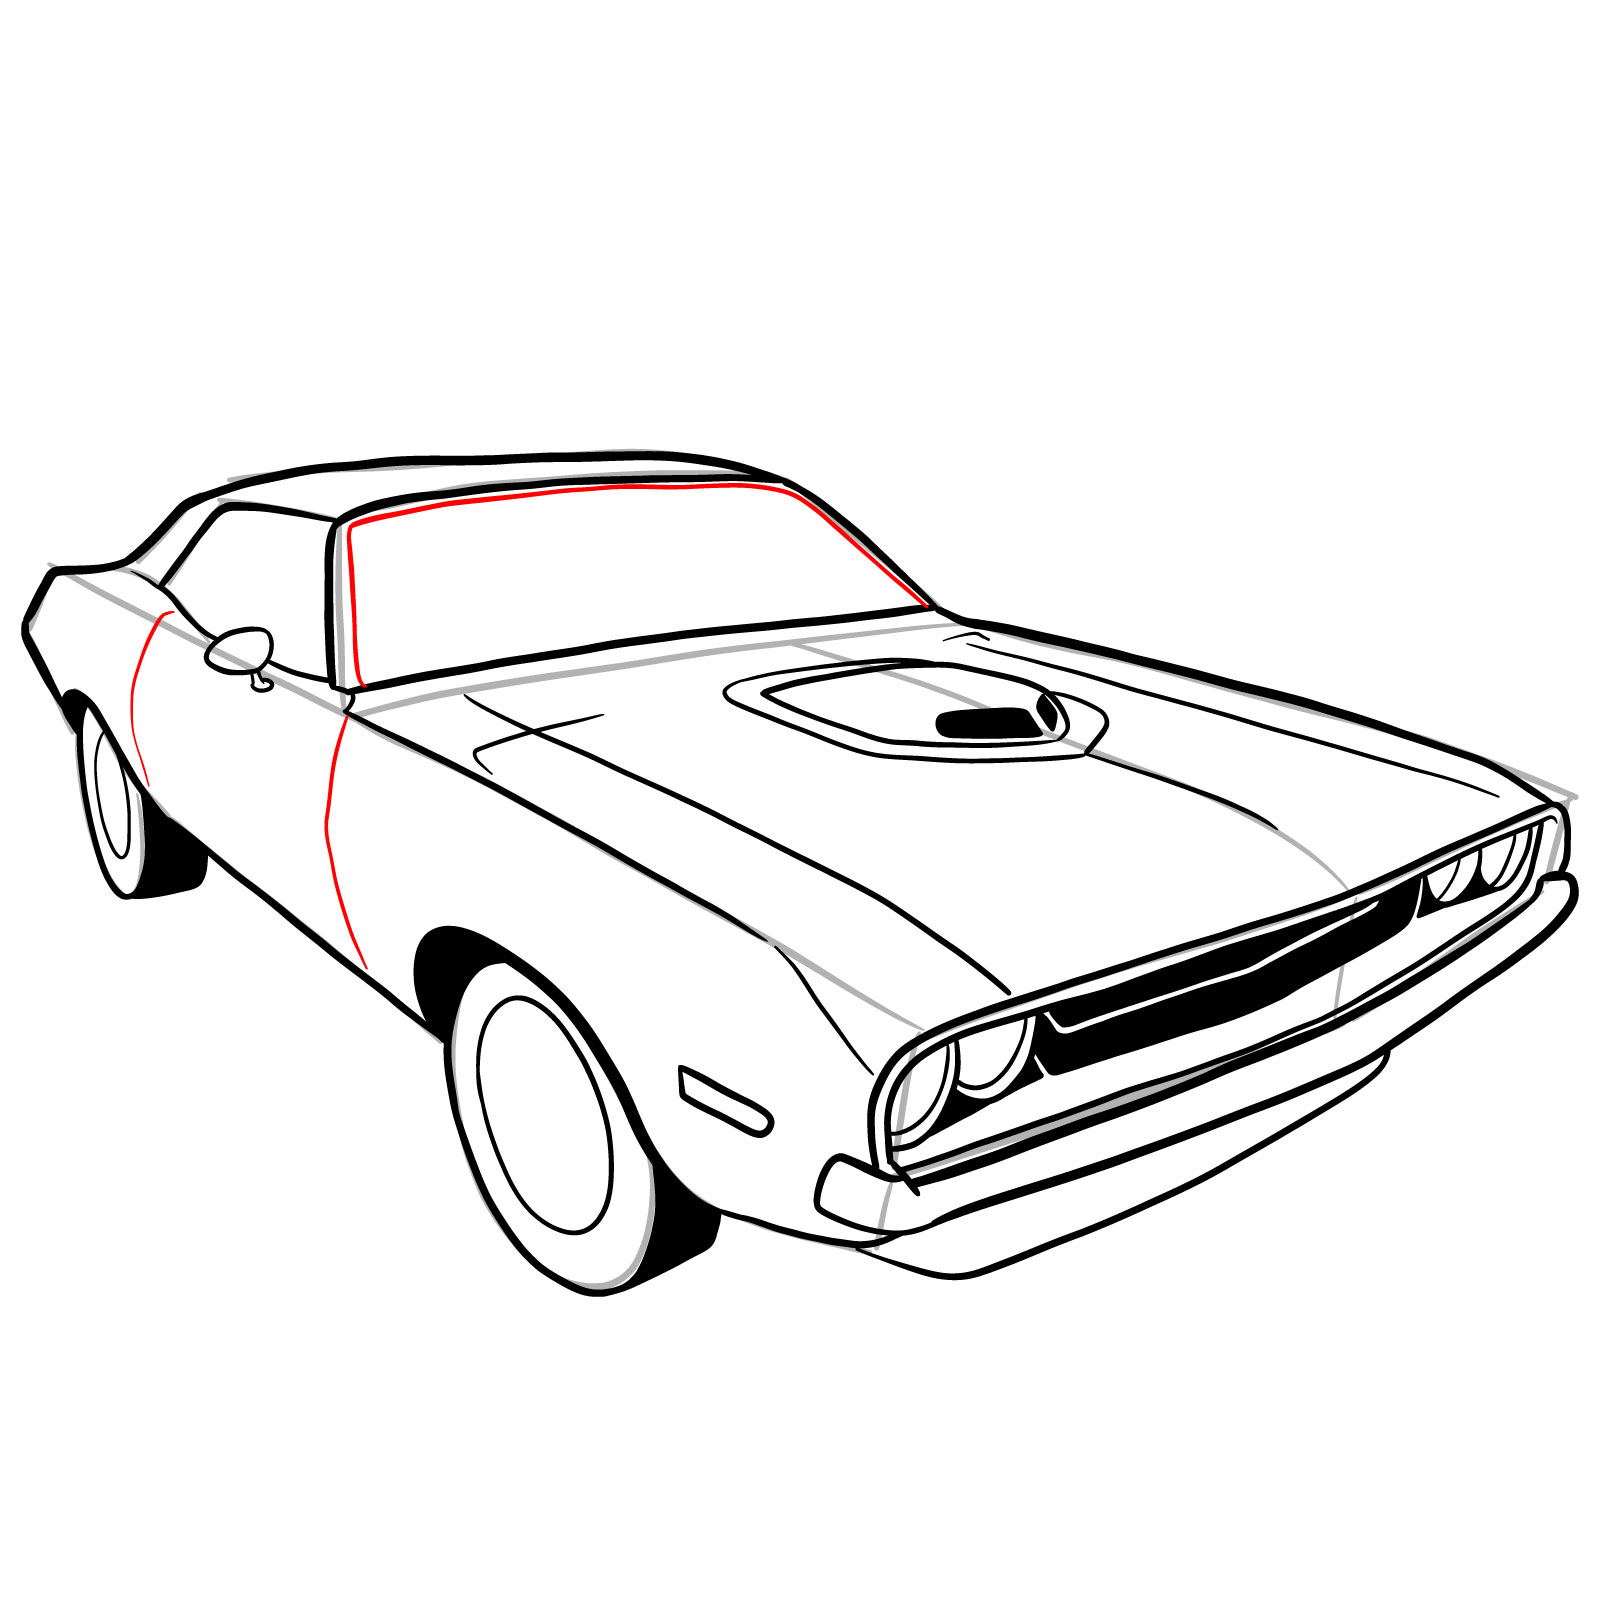 Download Dodge 1969 Dodge Charger Car RoyaltyFree Stock Illustration Image   Pixabay